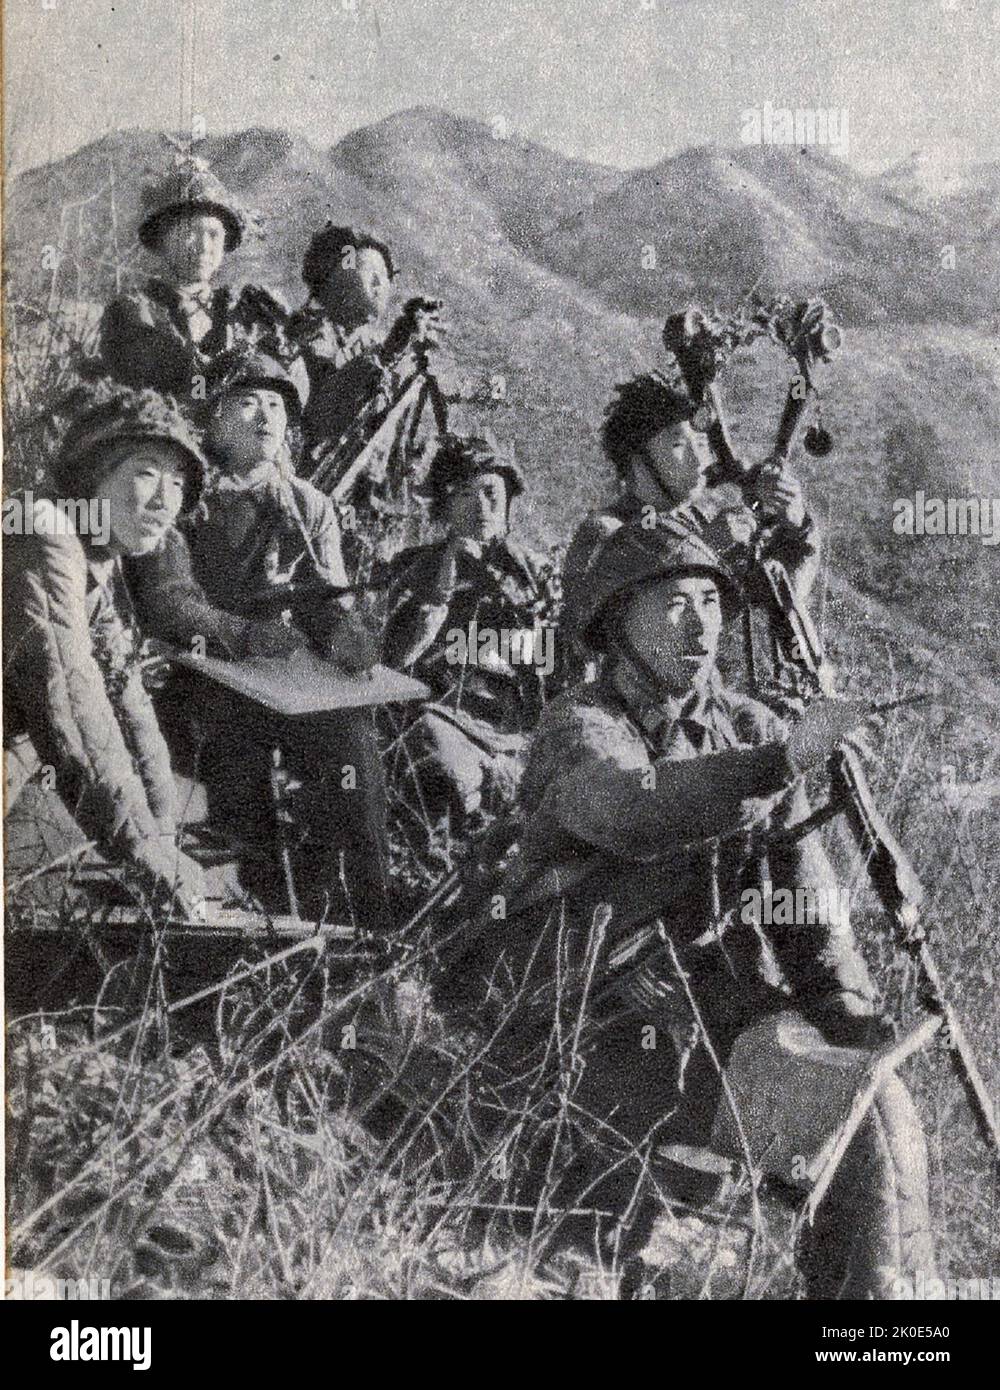 Propagandafoto des nordkoreanischen Militärs, das sich darauf vorbereitet, den Staat gegen Invasion oder Angriff zu verteidigen. 1963. Stockfoto